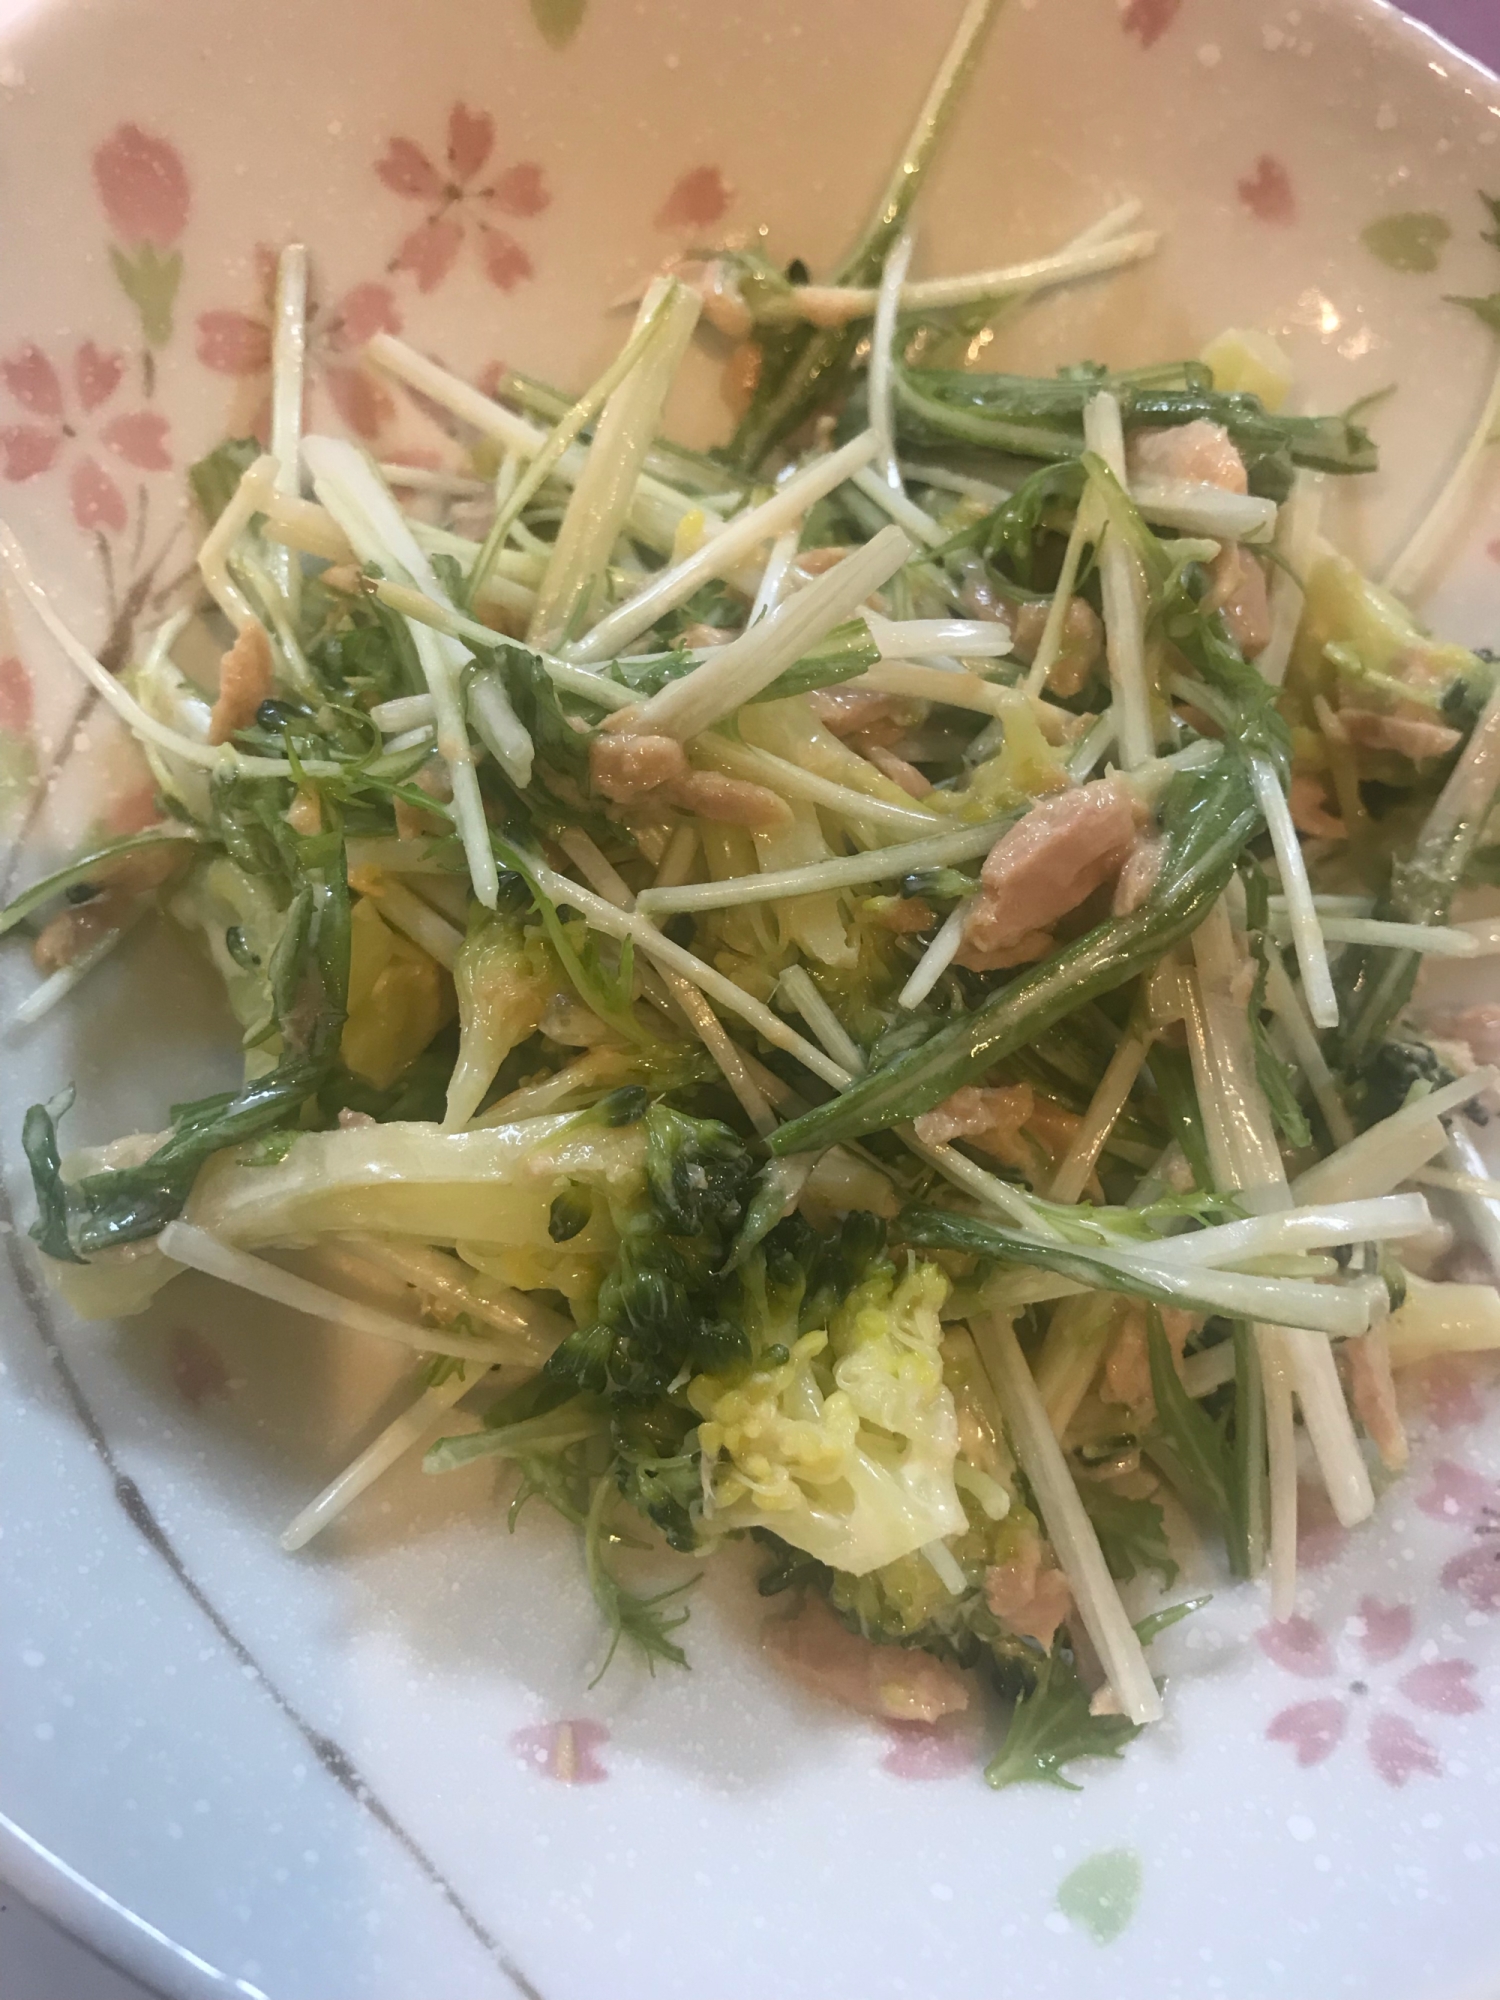 水菜とブロッコリーのツナサラダ